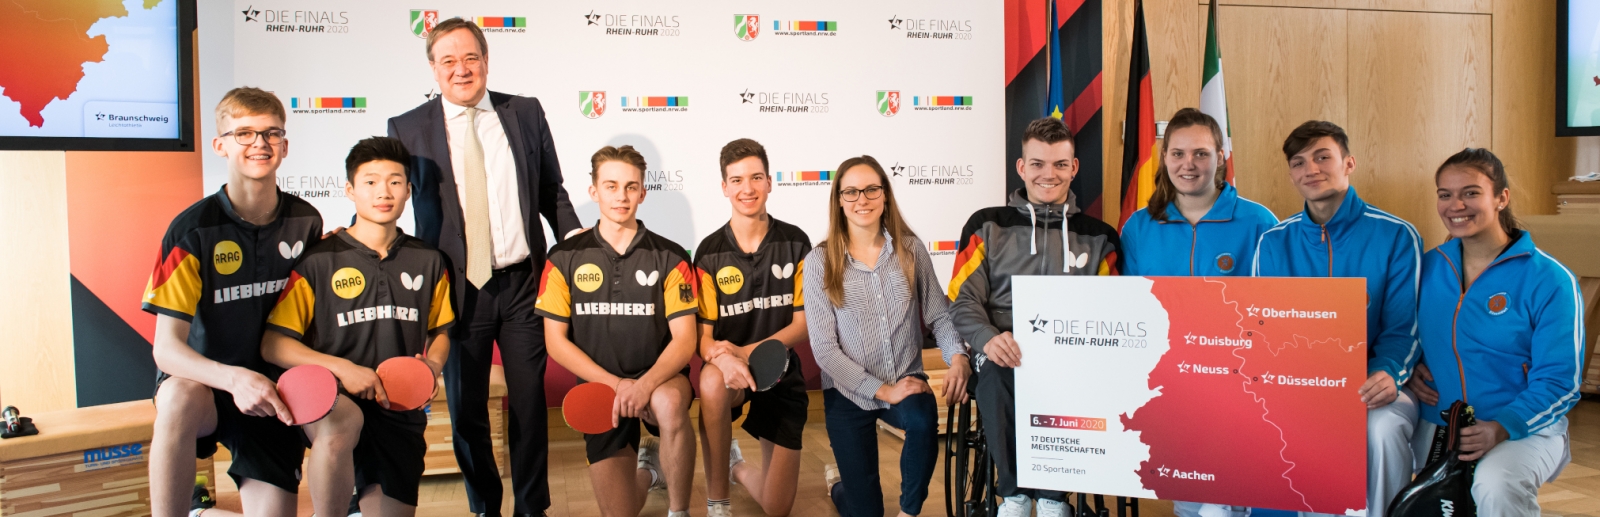 Ministerpräsident Armin Laschet steht mit einem Tischtennisspieler-Team zusammen für ein Portraitbild.